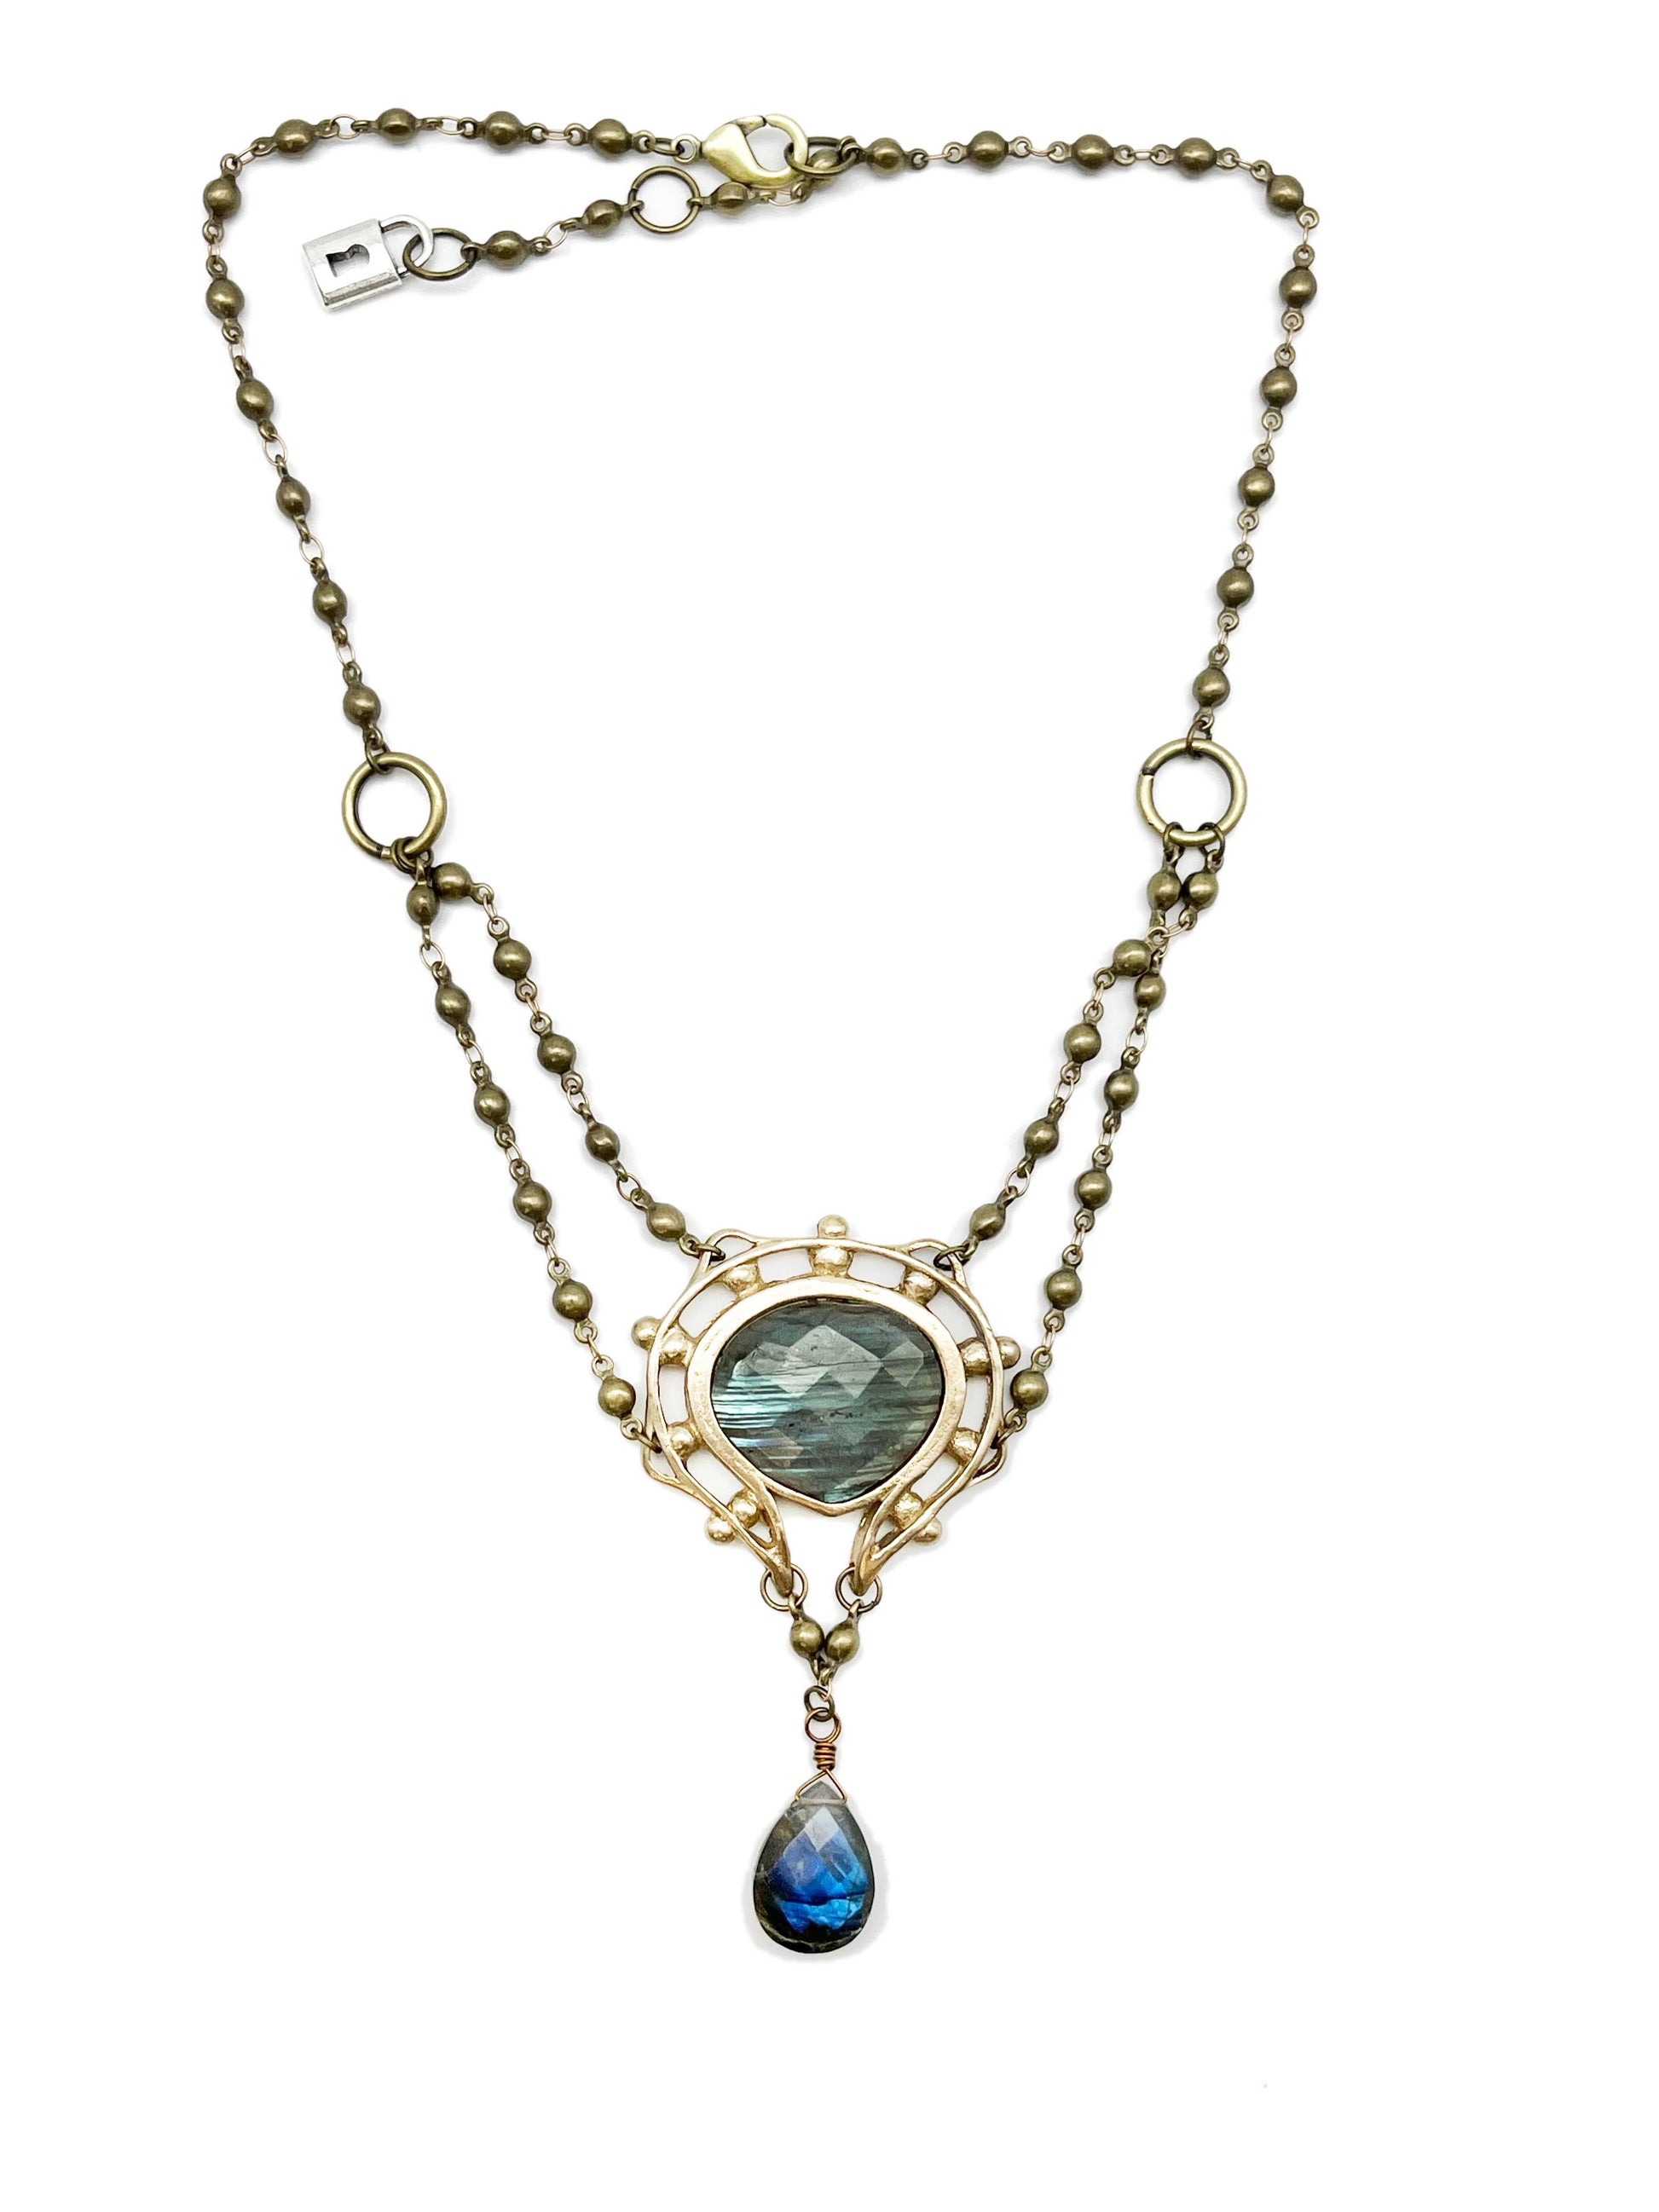 Collar Necklace with Bronze Granulated Pendant - La De Da